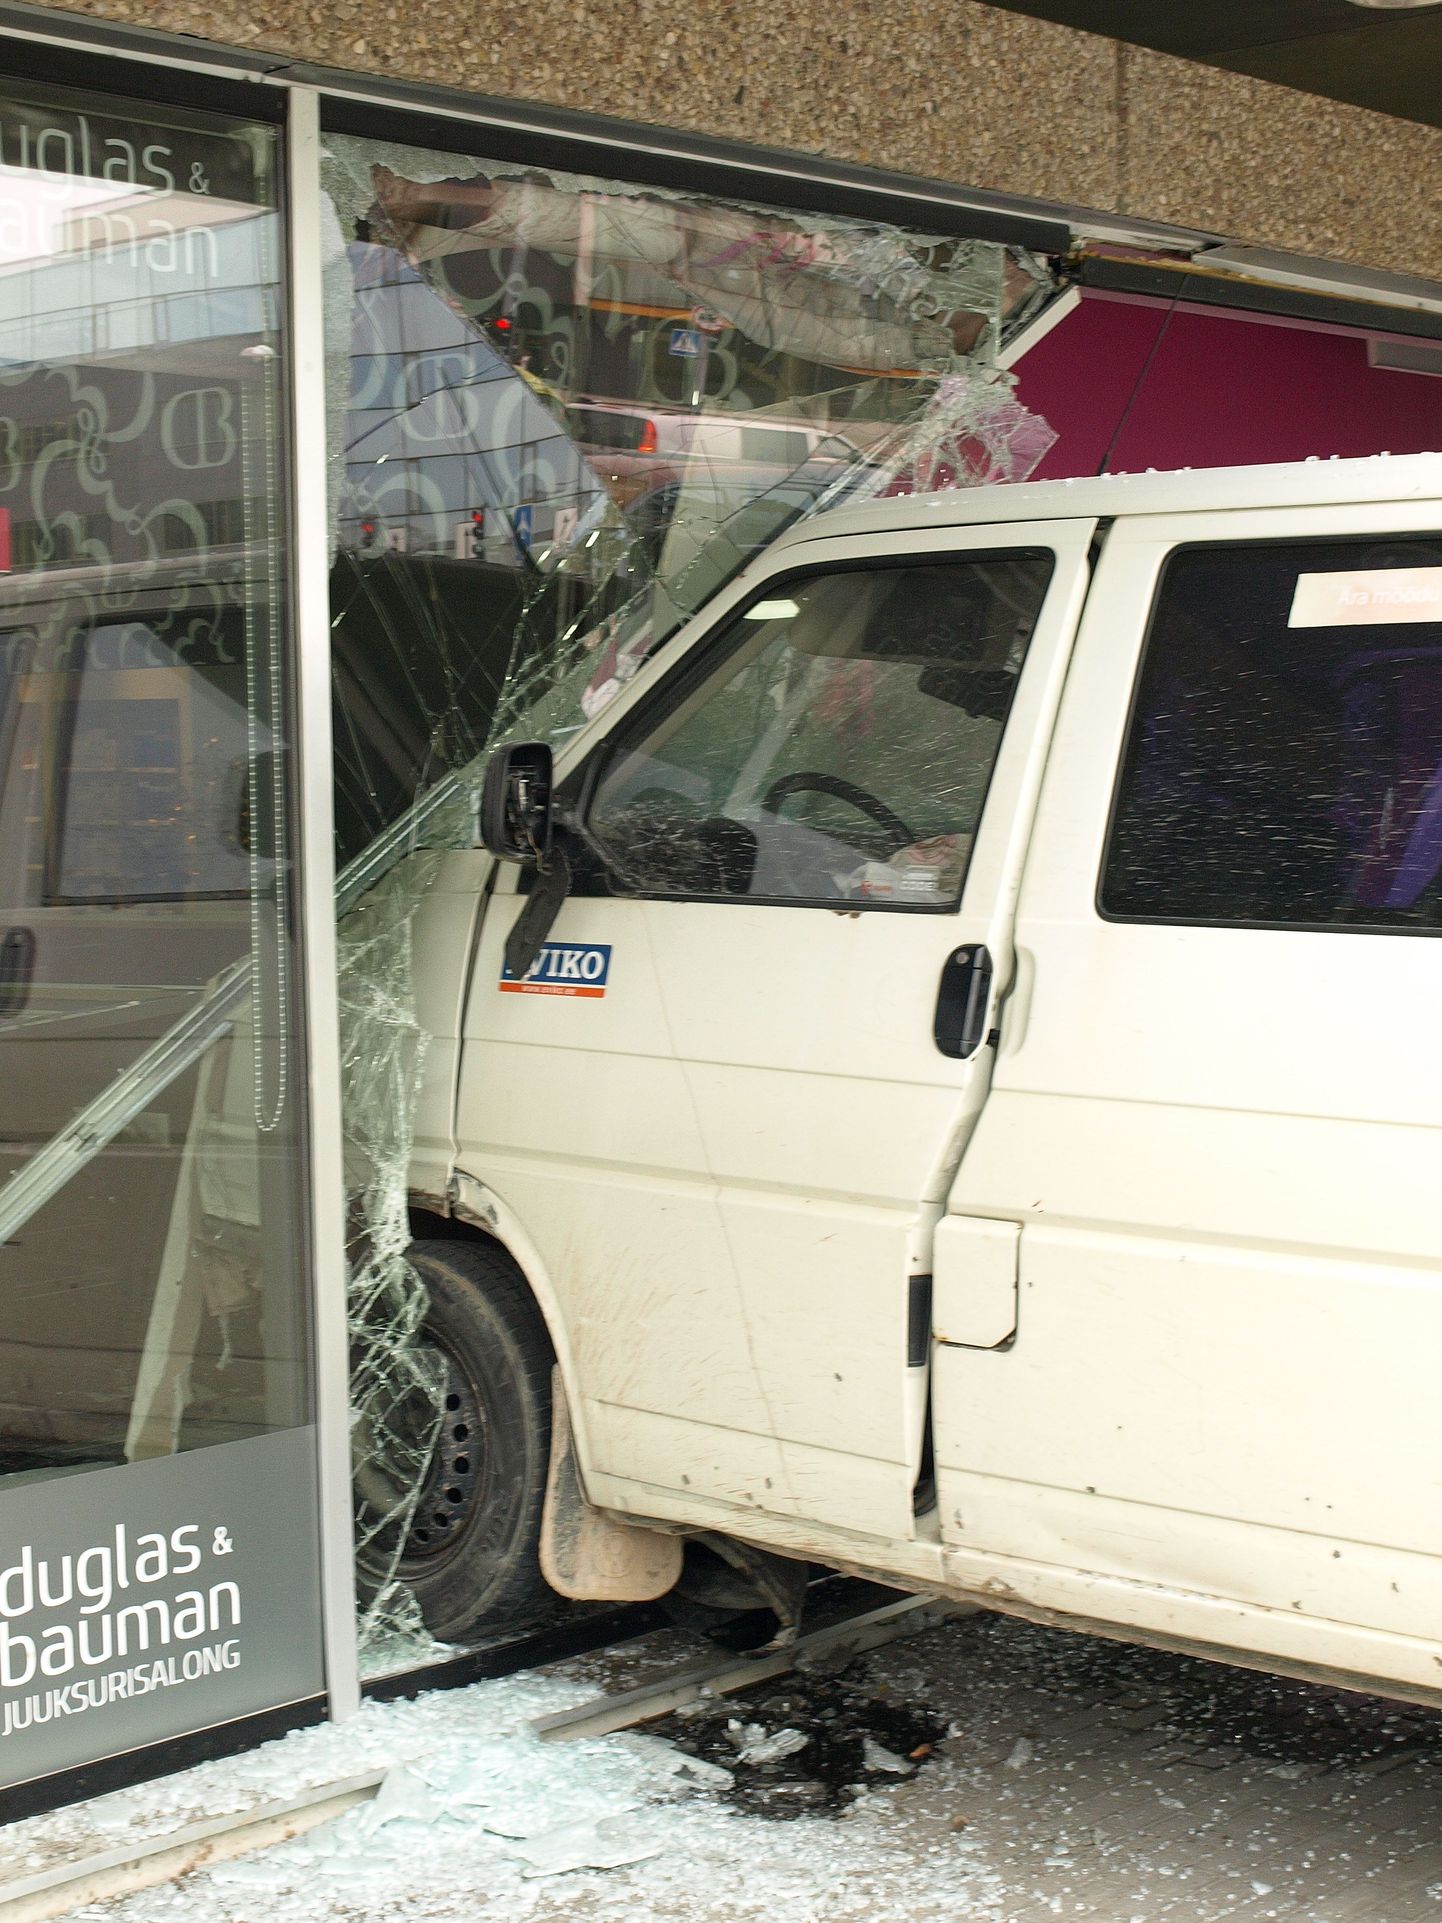 Avarii järel teelt paiskunud kaubik purustas Tasku keskuse juuksurisalongi aknad.